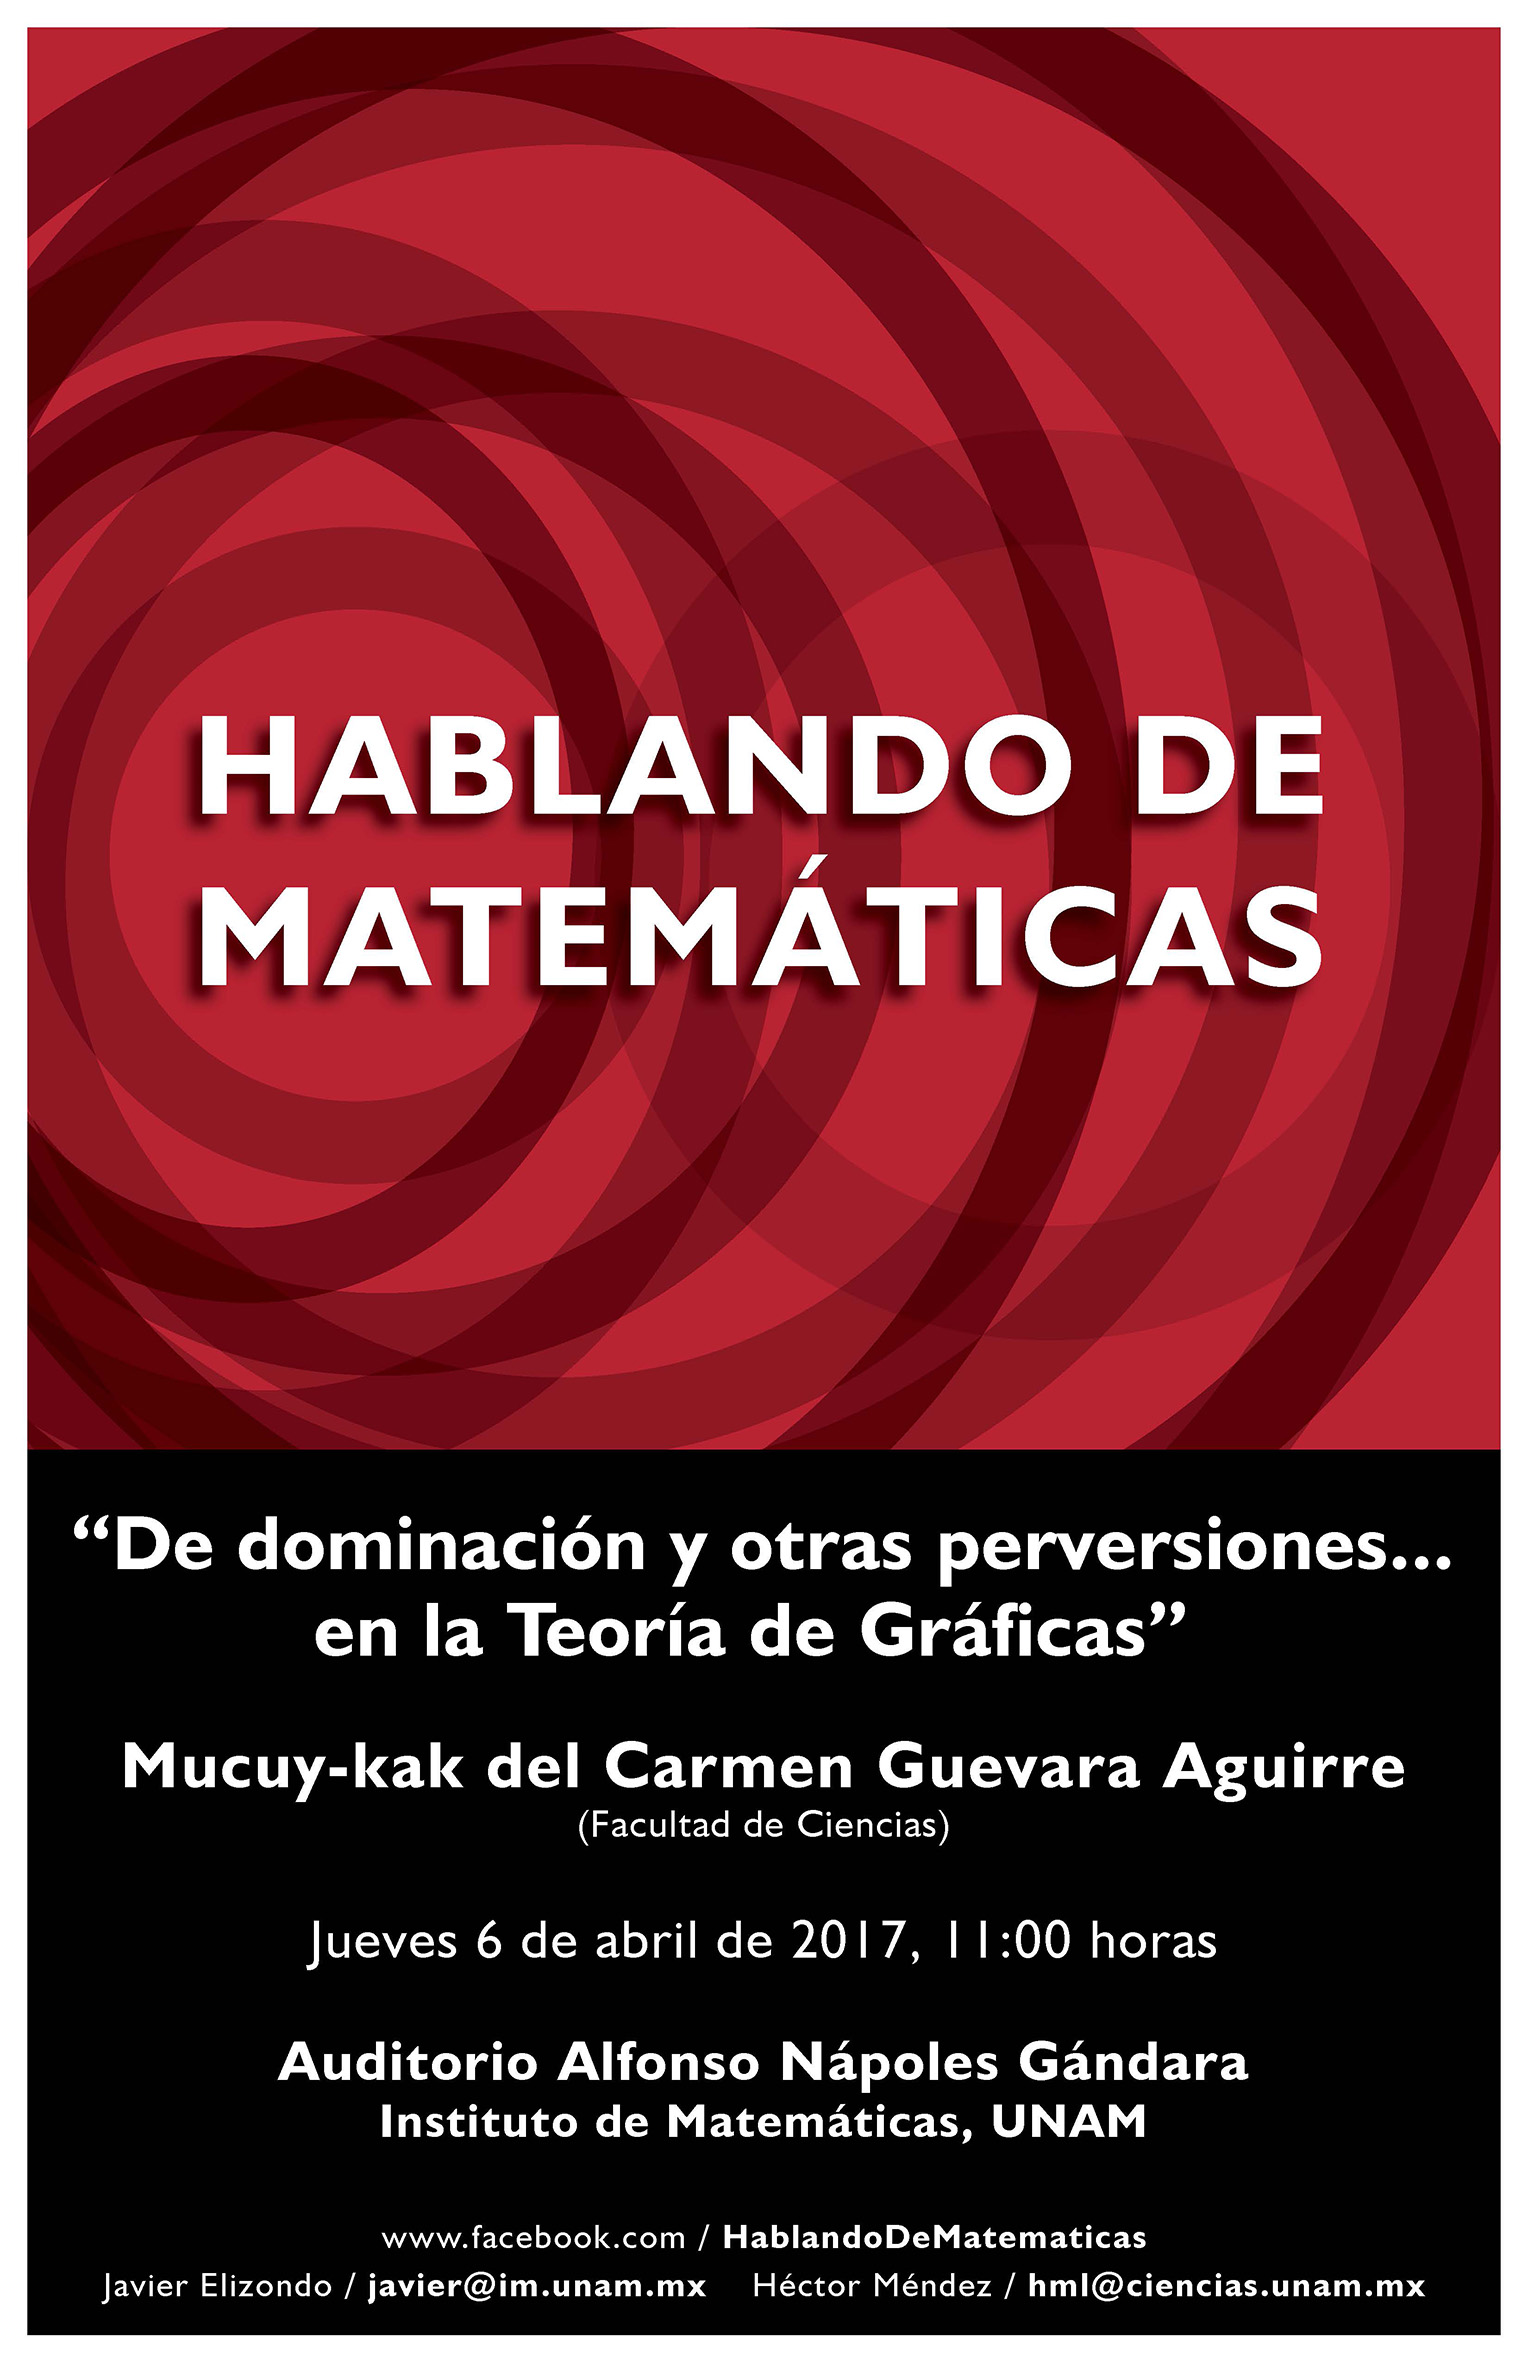 Hablando de Matemáticas: Mucuy-kak del Carmen Guevara Aguirre, Facultad de Ciencias, UNAM